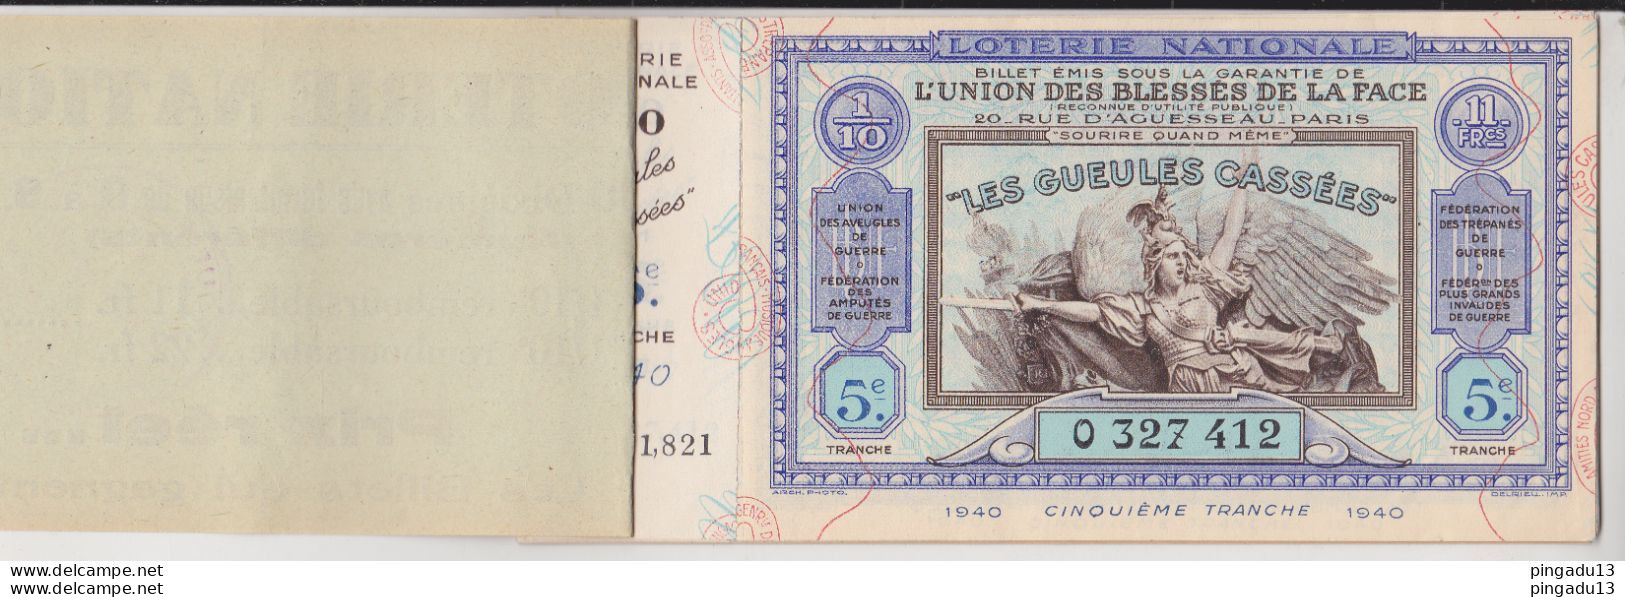 Fixe France Loterie Nationale Carnet De 8 Billets 1940 5 ème Tranche Gueules Cassées Très Bon état - Lottery Tickets